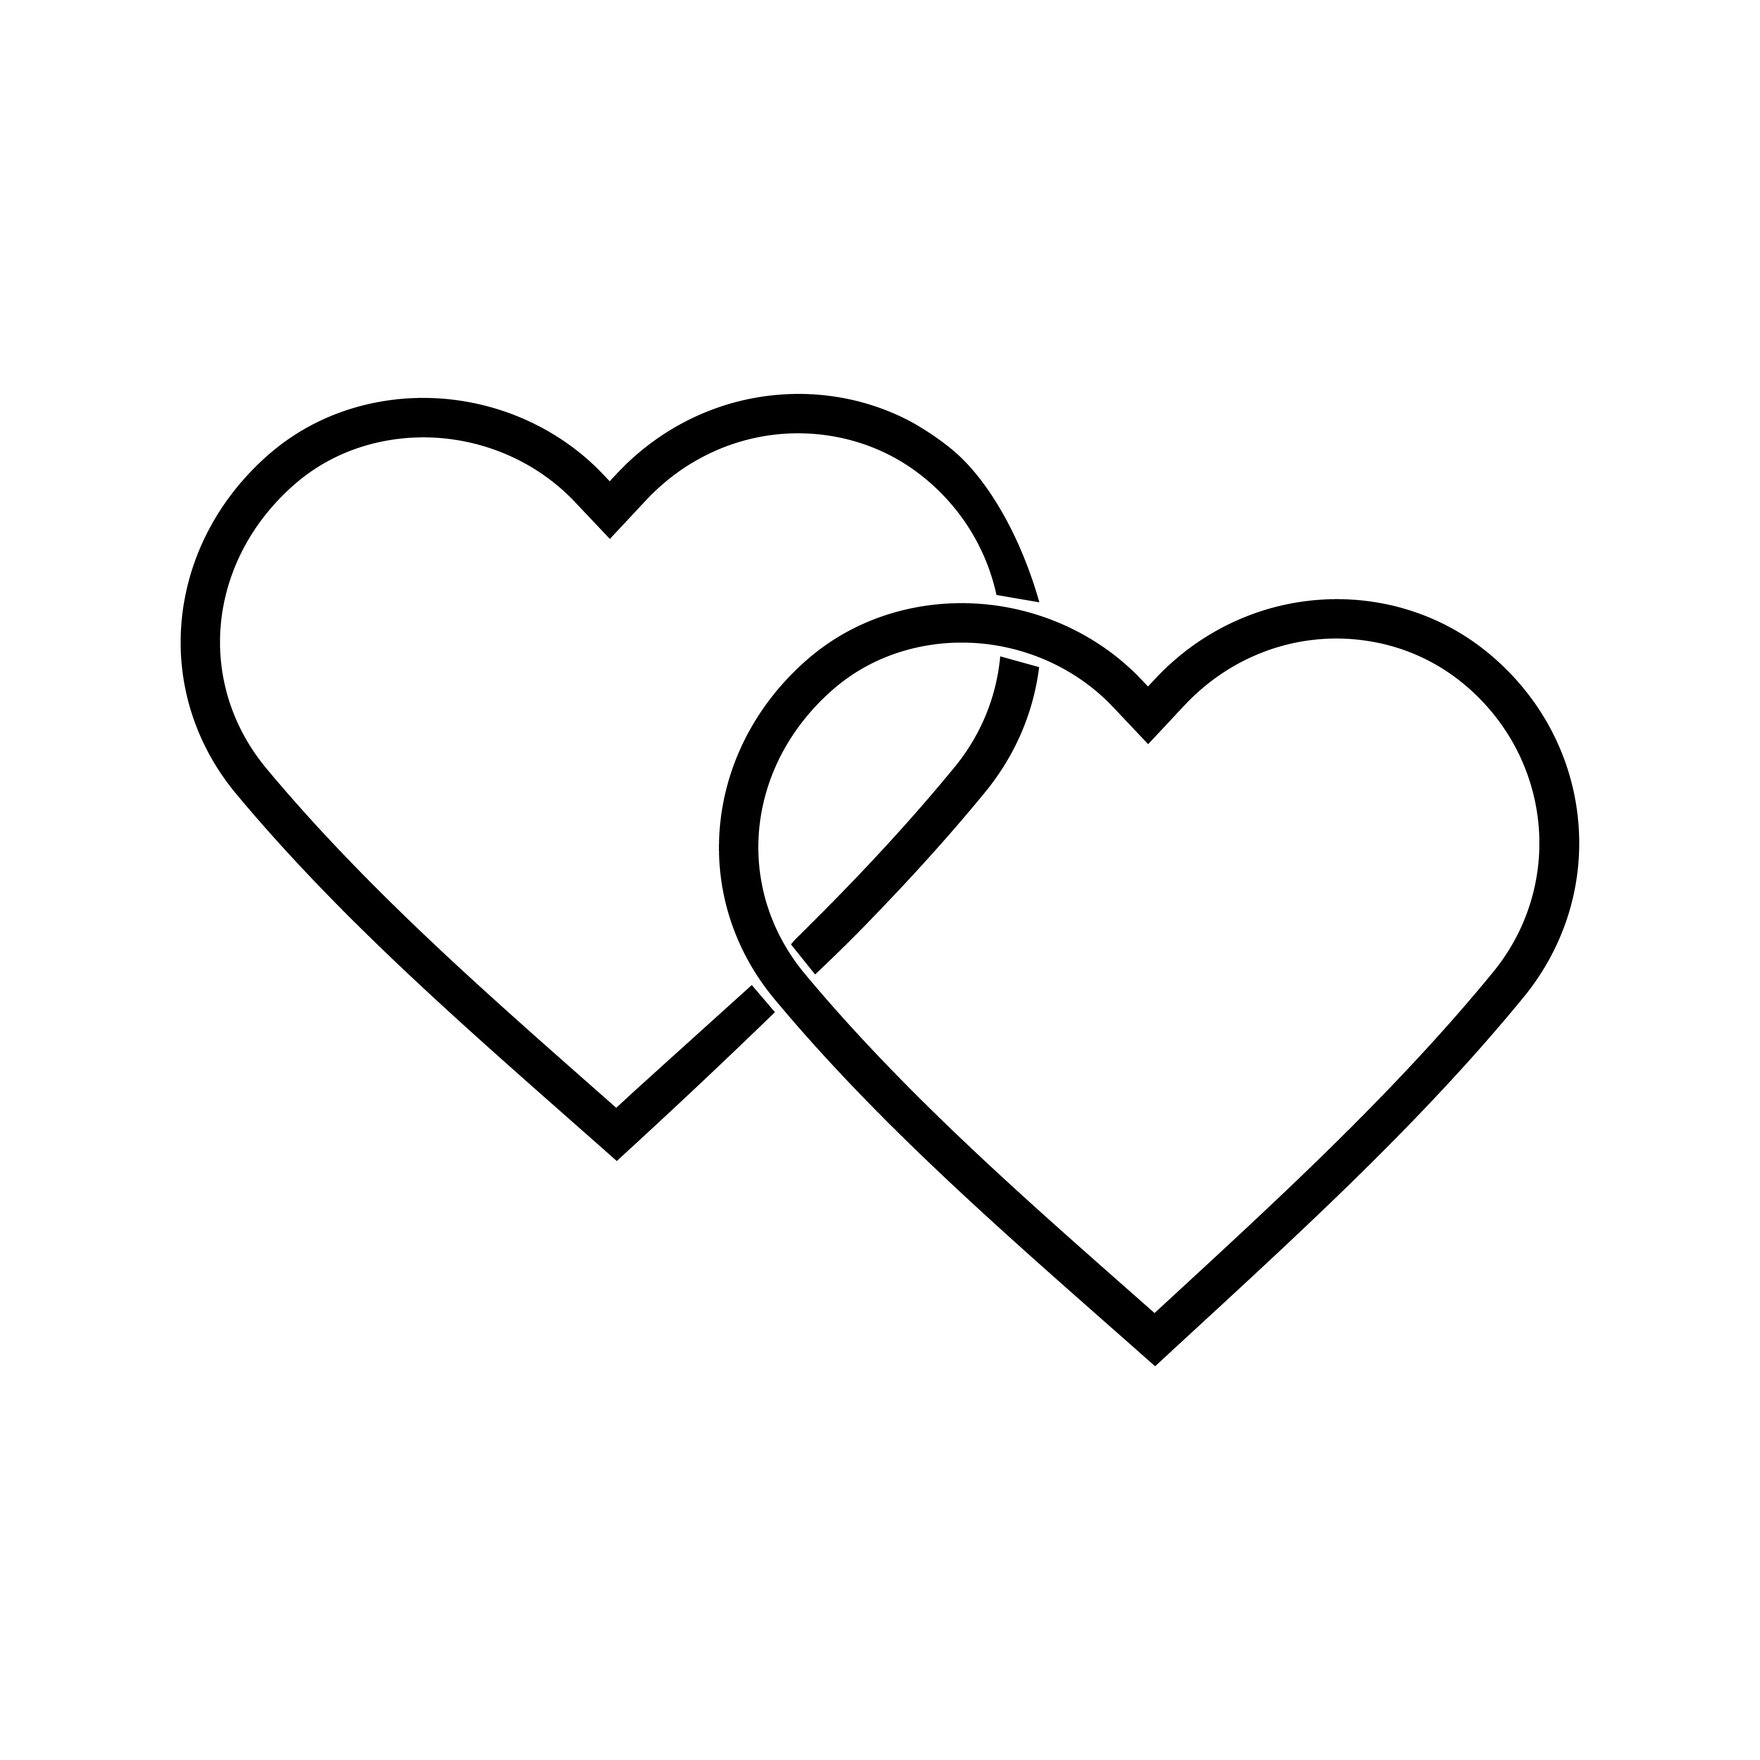 Wedding Heart Silhouette in Illustrator, EPS, SVG, JPG, PNG